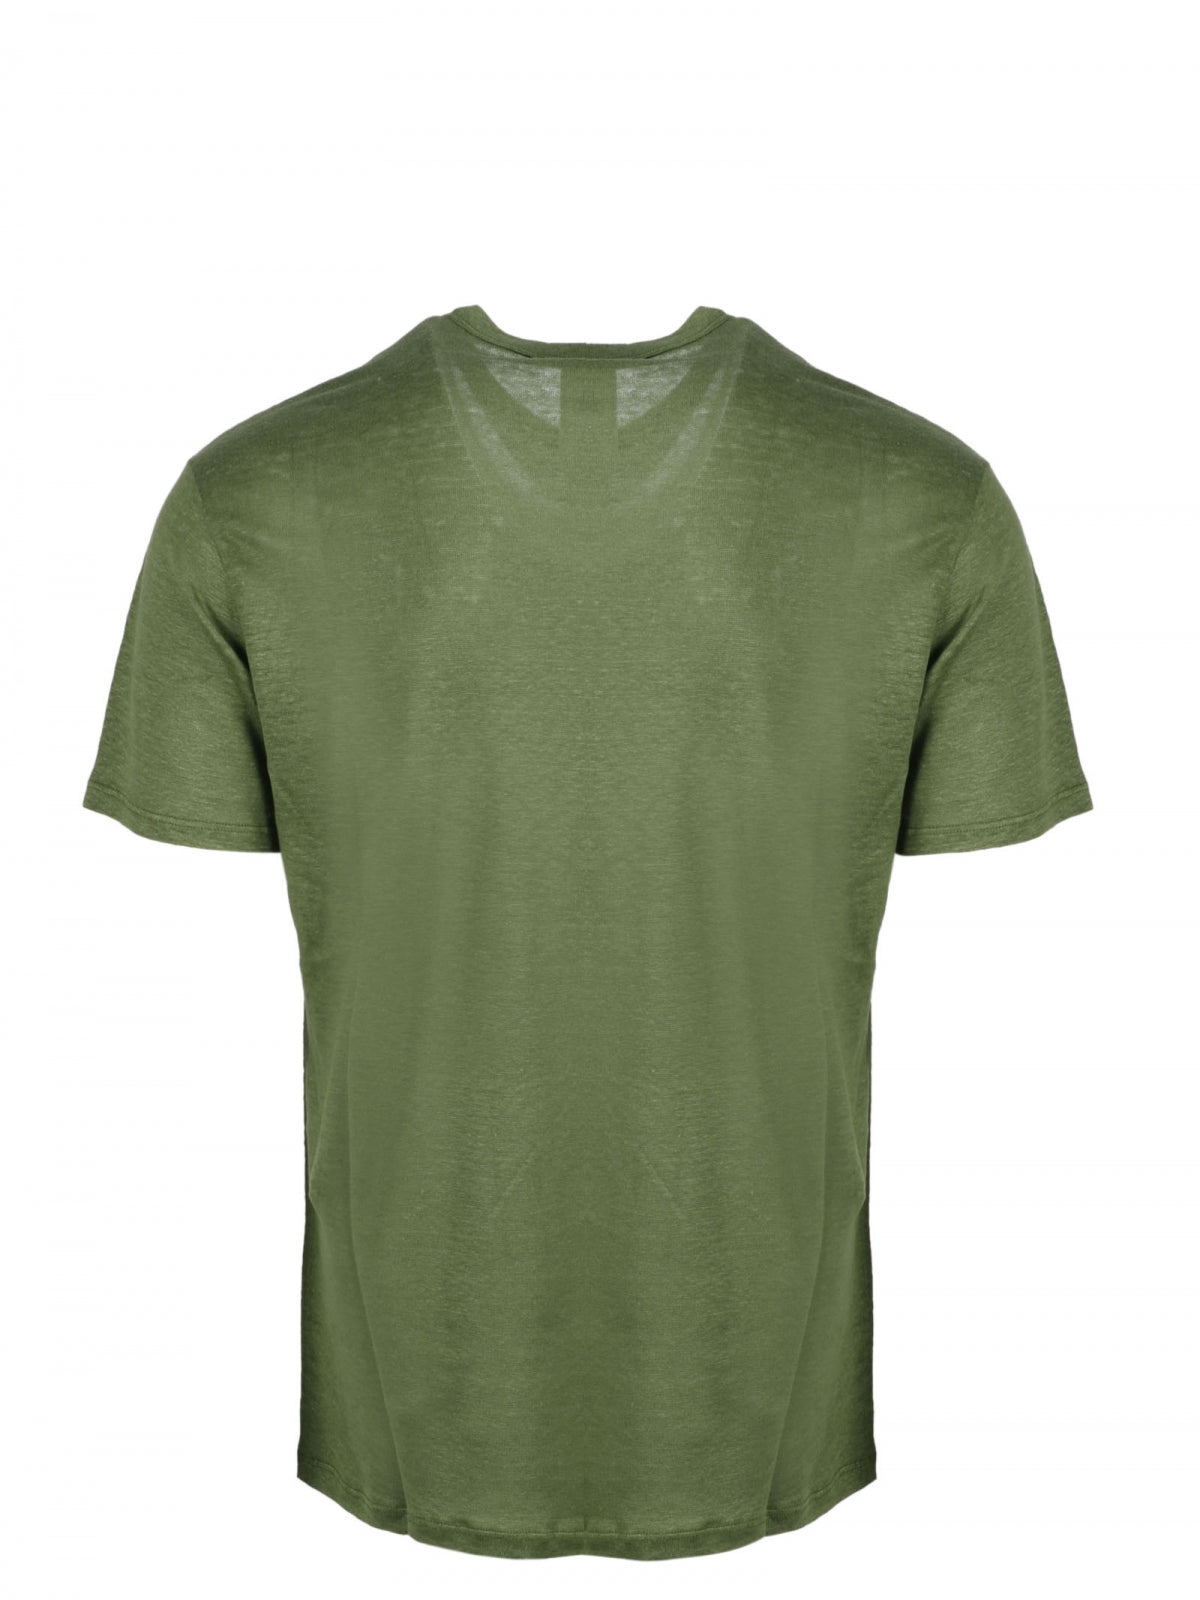 Men's regular fit linen T-shirt